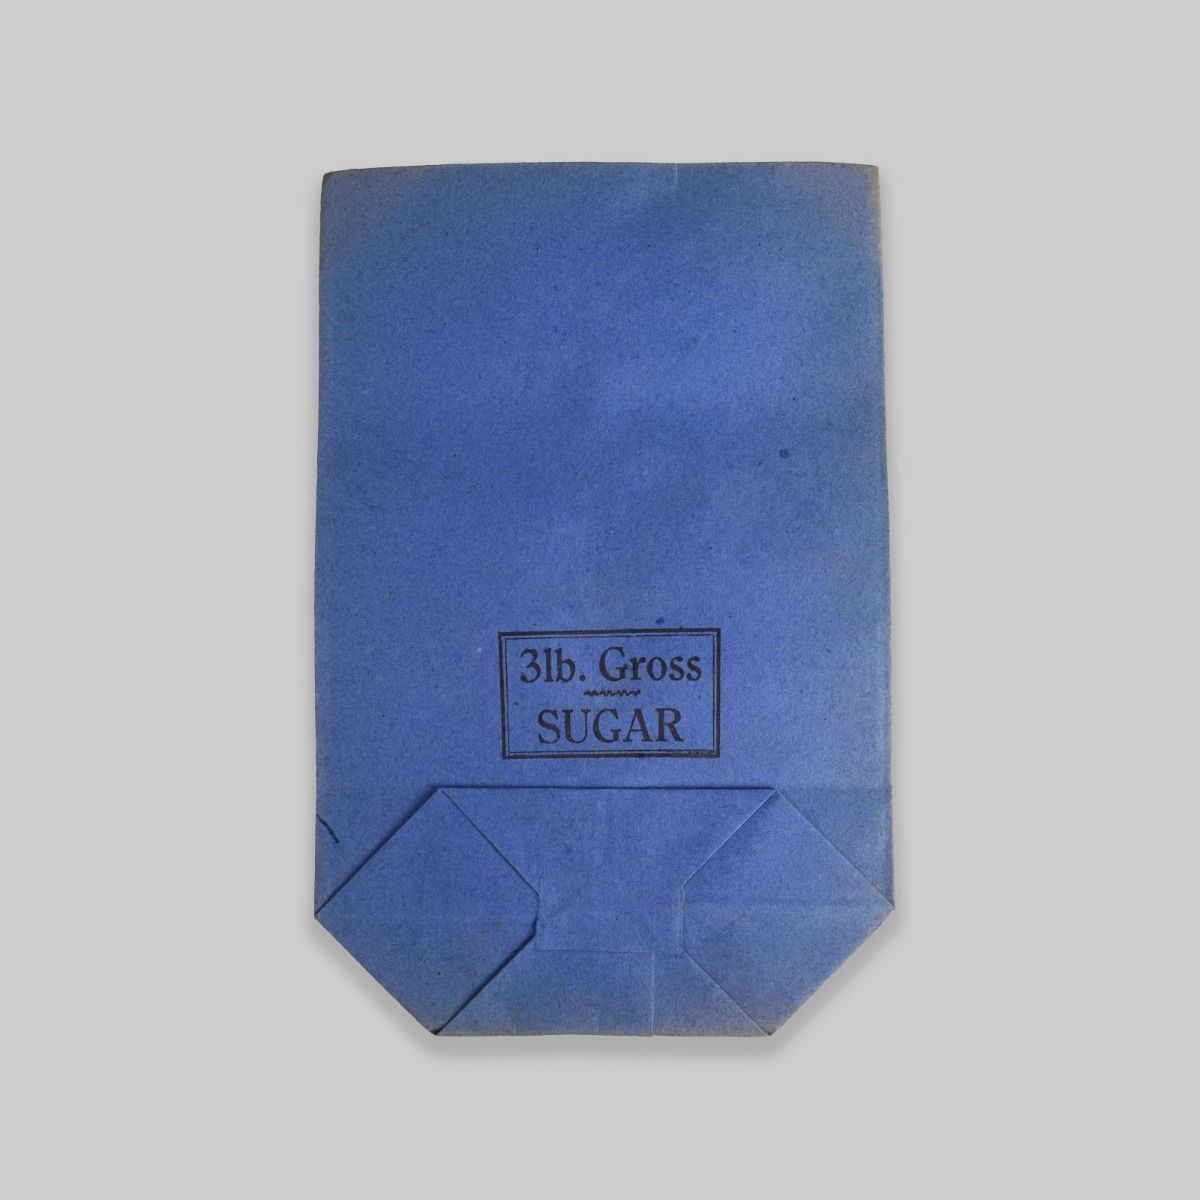 Vintage 1940s Blue Paper Sugar Bag